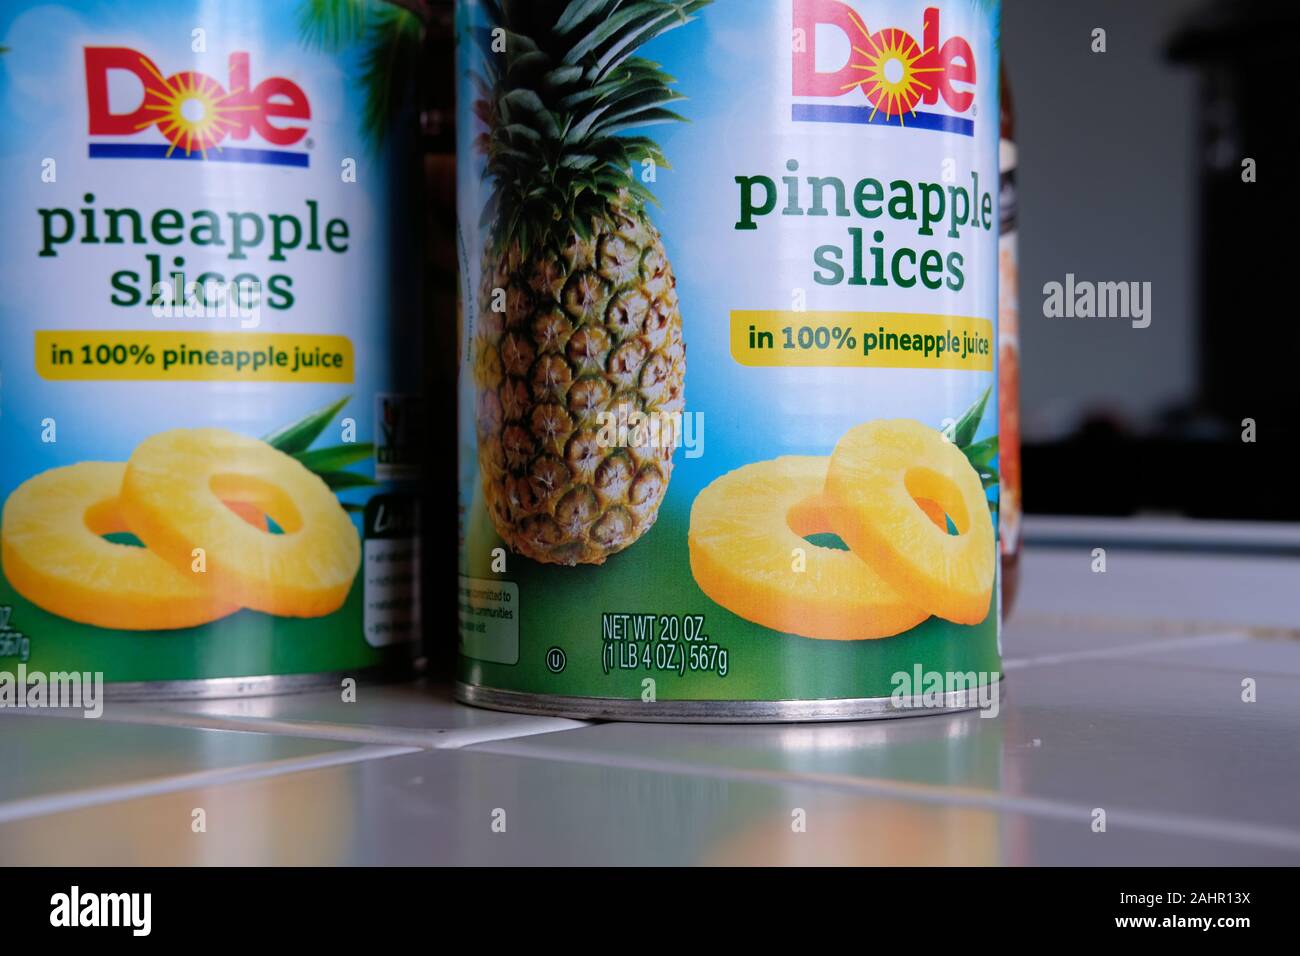 Zwei 20 Unze Blechdosen (567 Gramm) von Dole Marke Ananasscheiben in 100% Ananas Saft auf eine geflieste Küche begegnen. Stockfoto